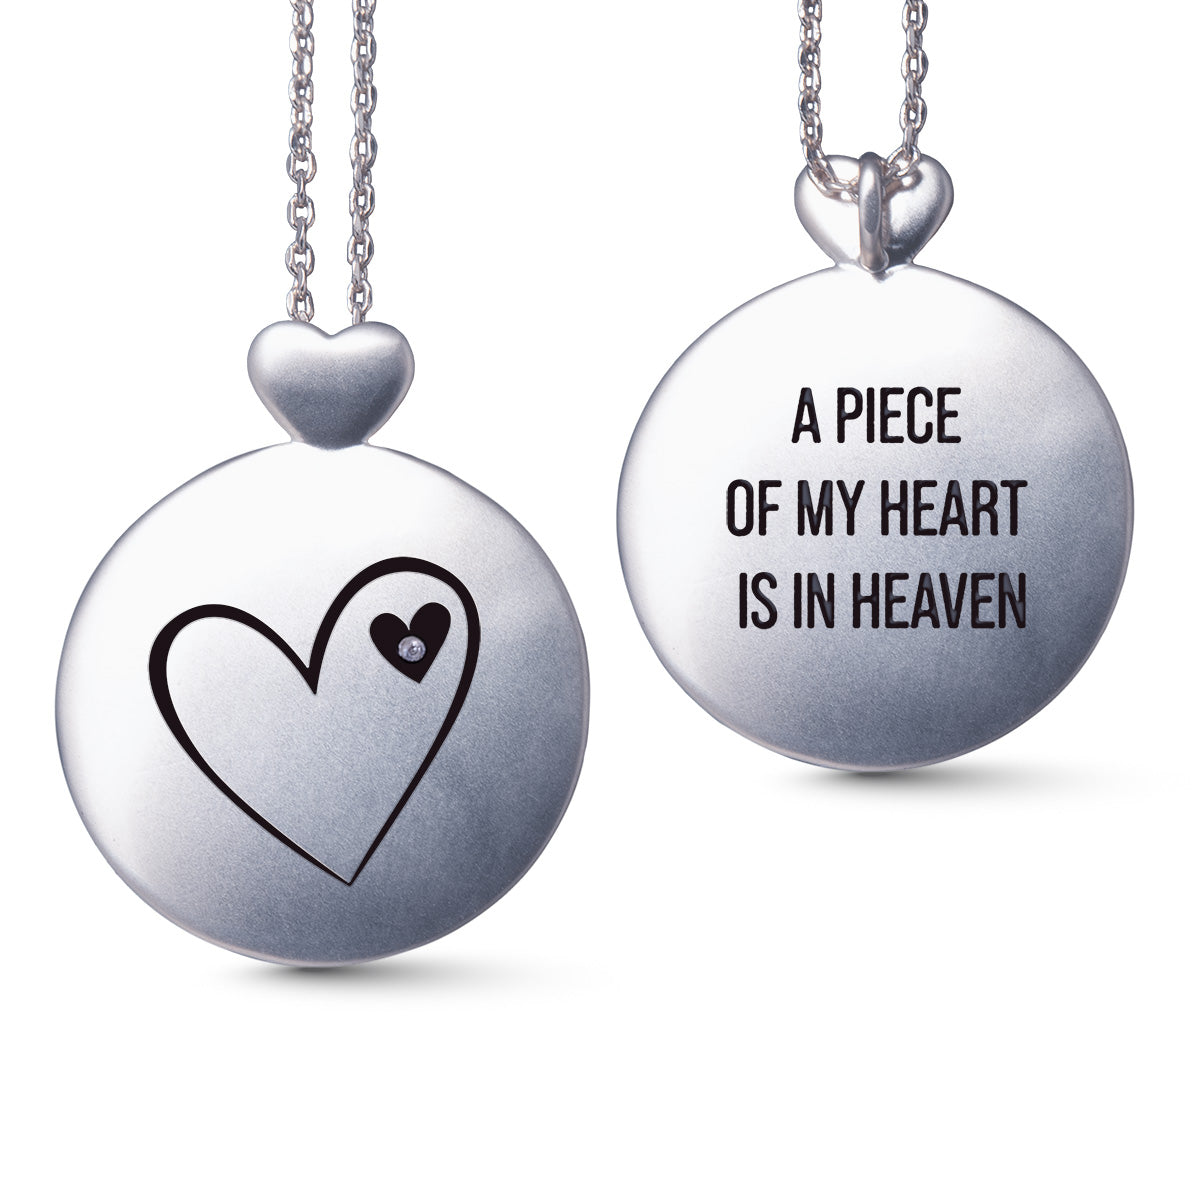 Silver Necklace w/ Heart In Heaven Pendant